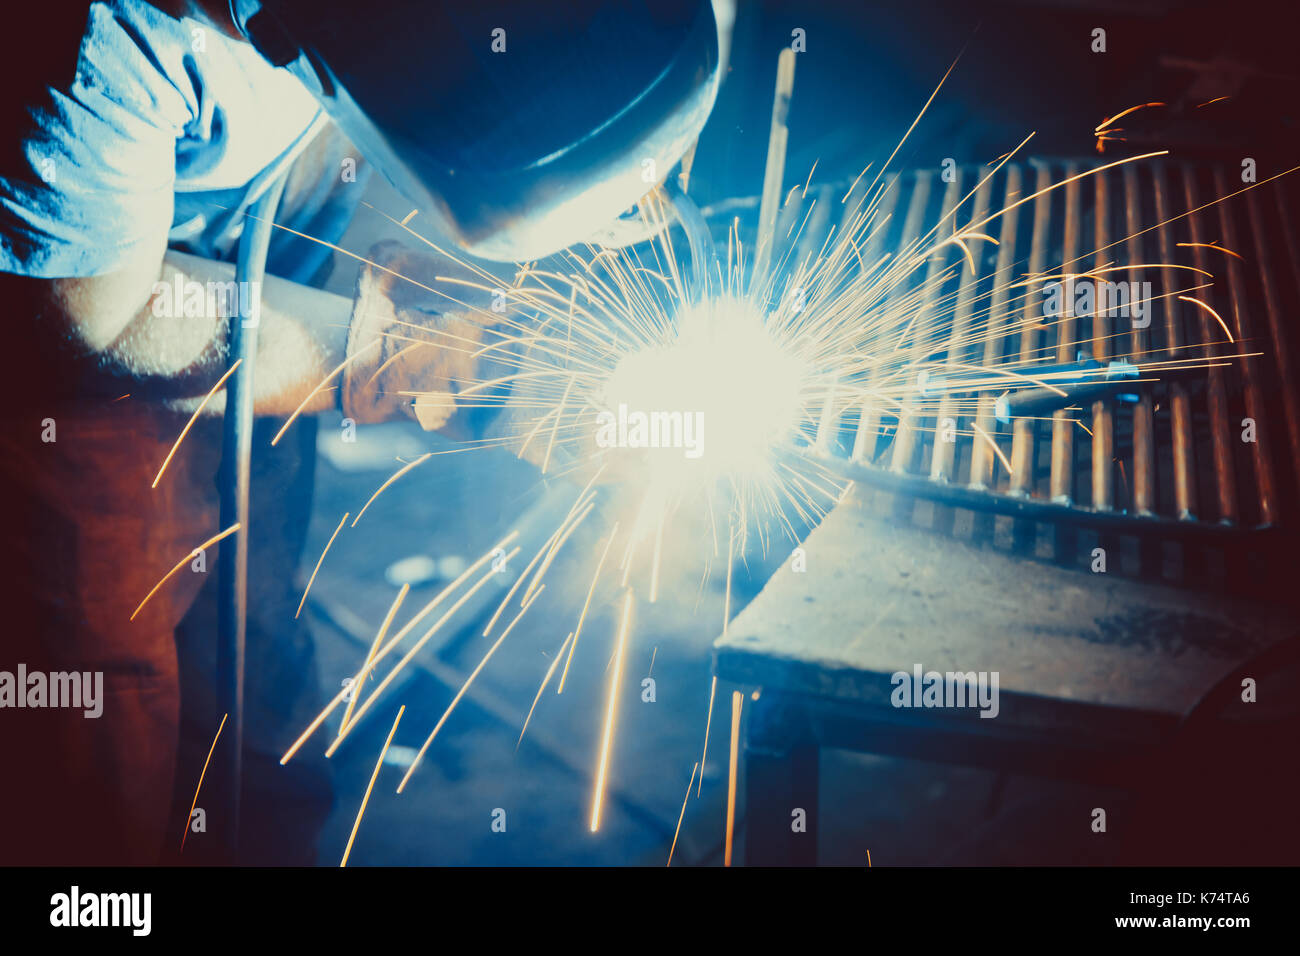 Welding Work. Erecting Technical Steel Industrial Steel Welder In Factory. Craftsman. Stock Photo